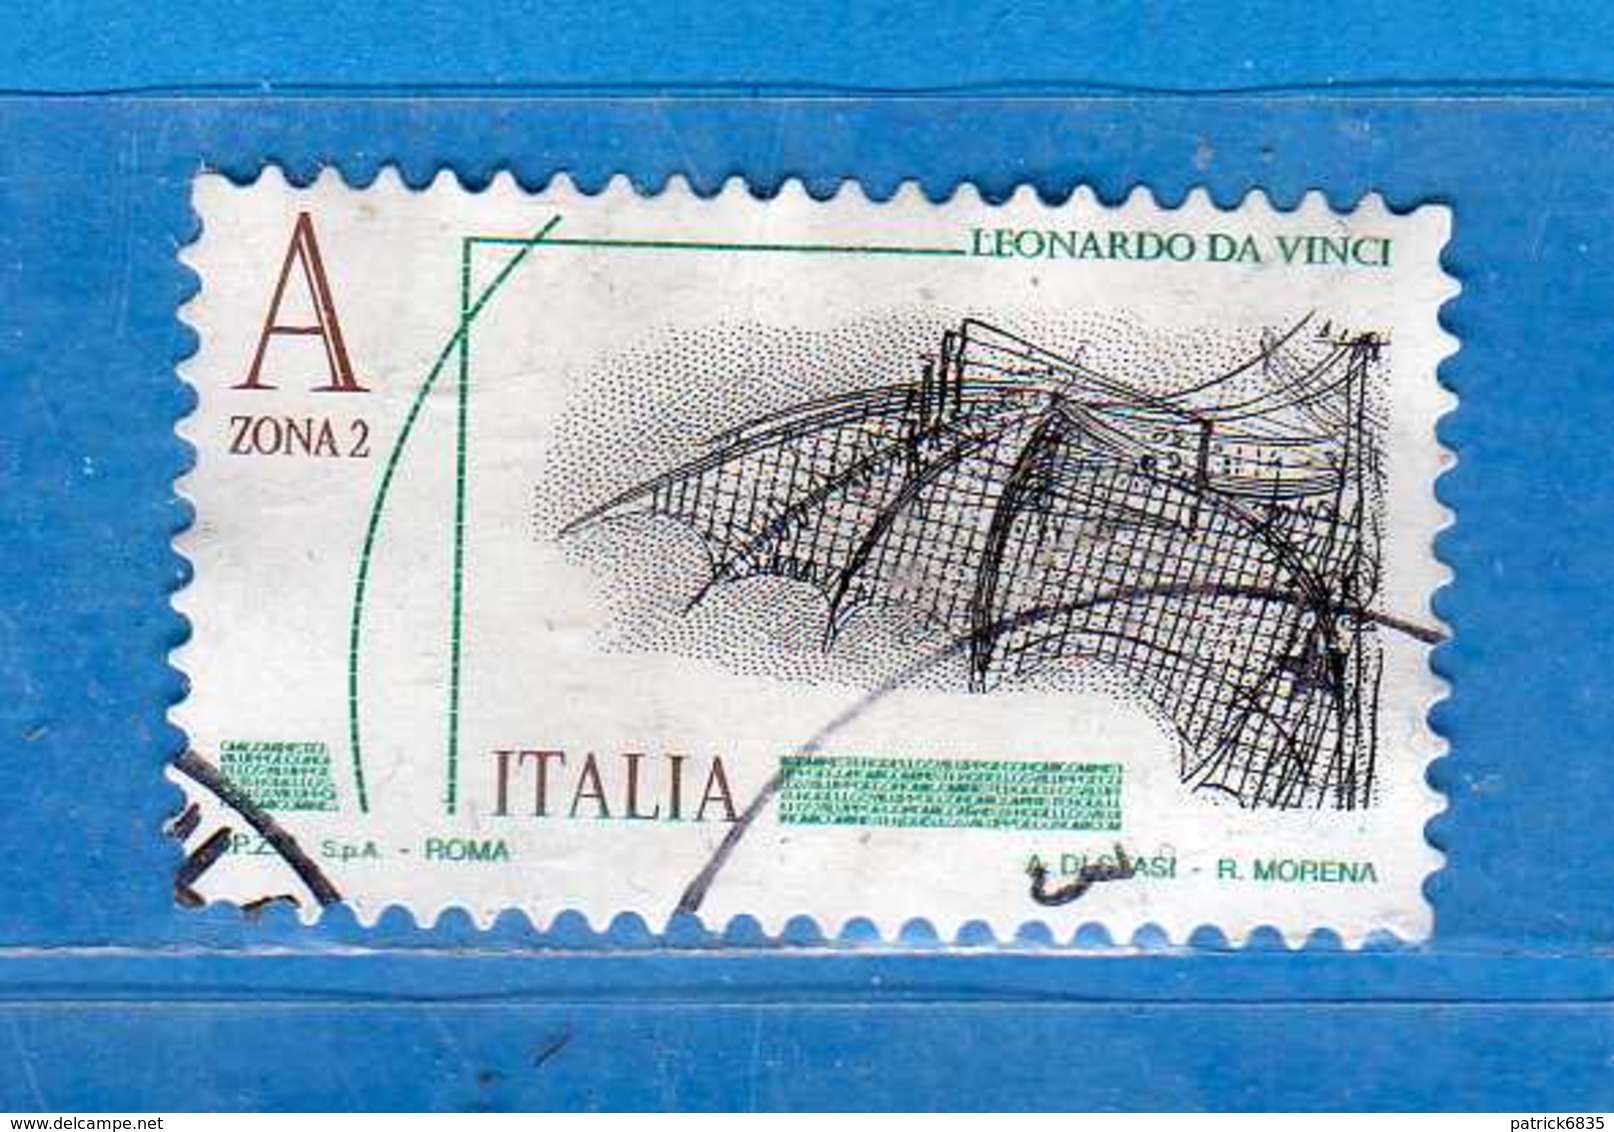 Italia ° -  2015 -  LEONARDESCA &euro; 4,50  ZONA 2.    Usato  LUSSO.  .   Vedi Descrizione - 2011-20: Usati